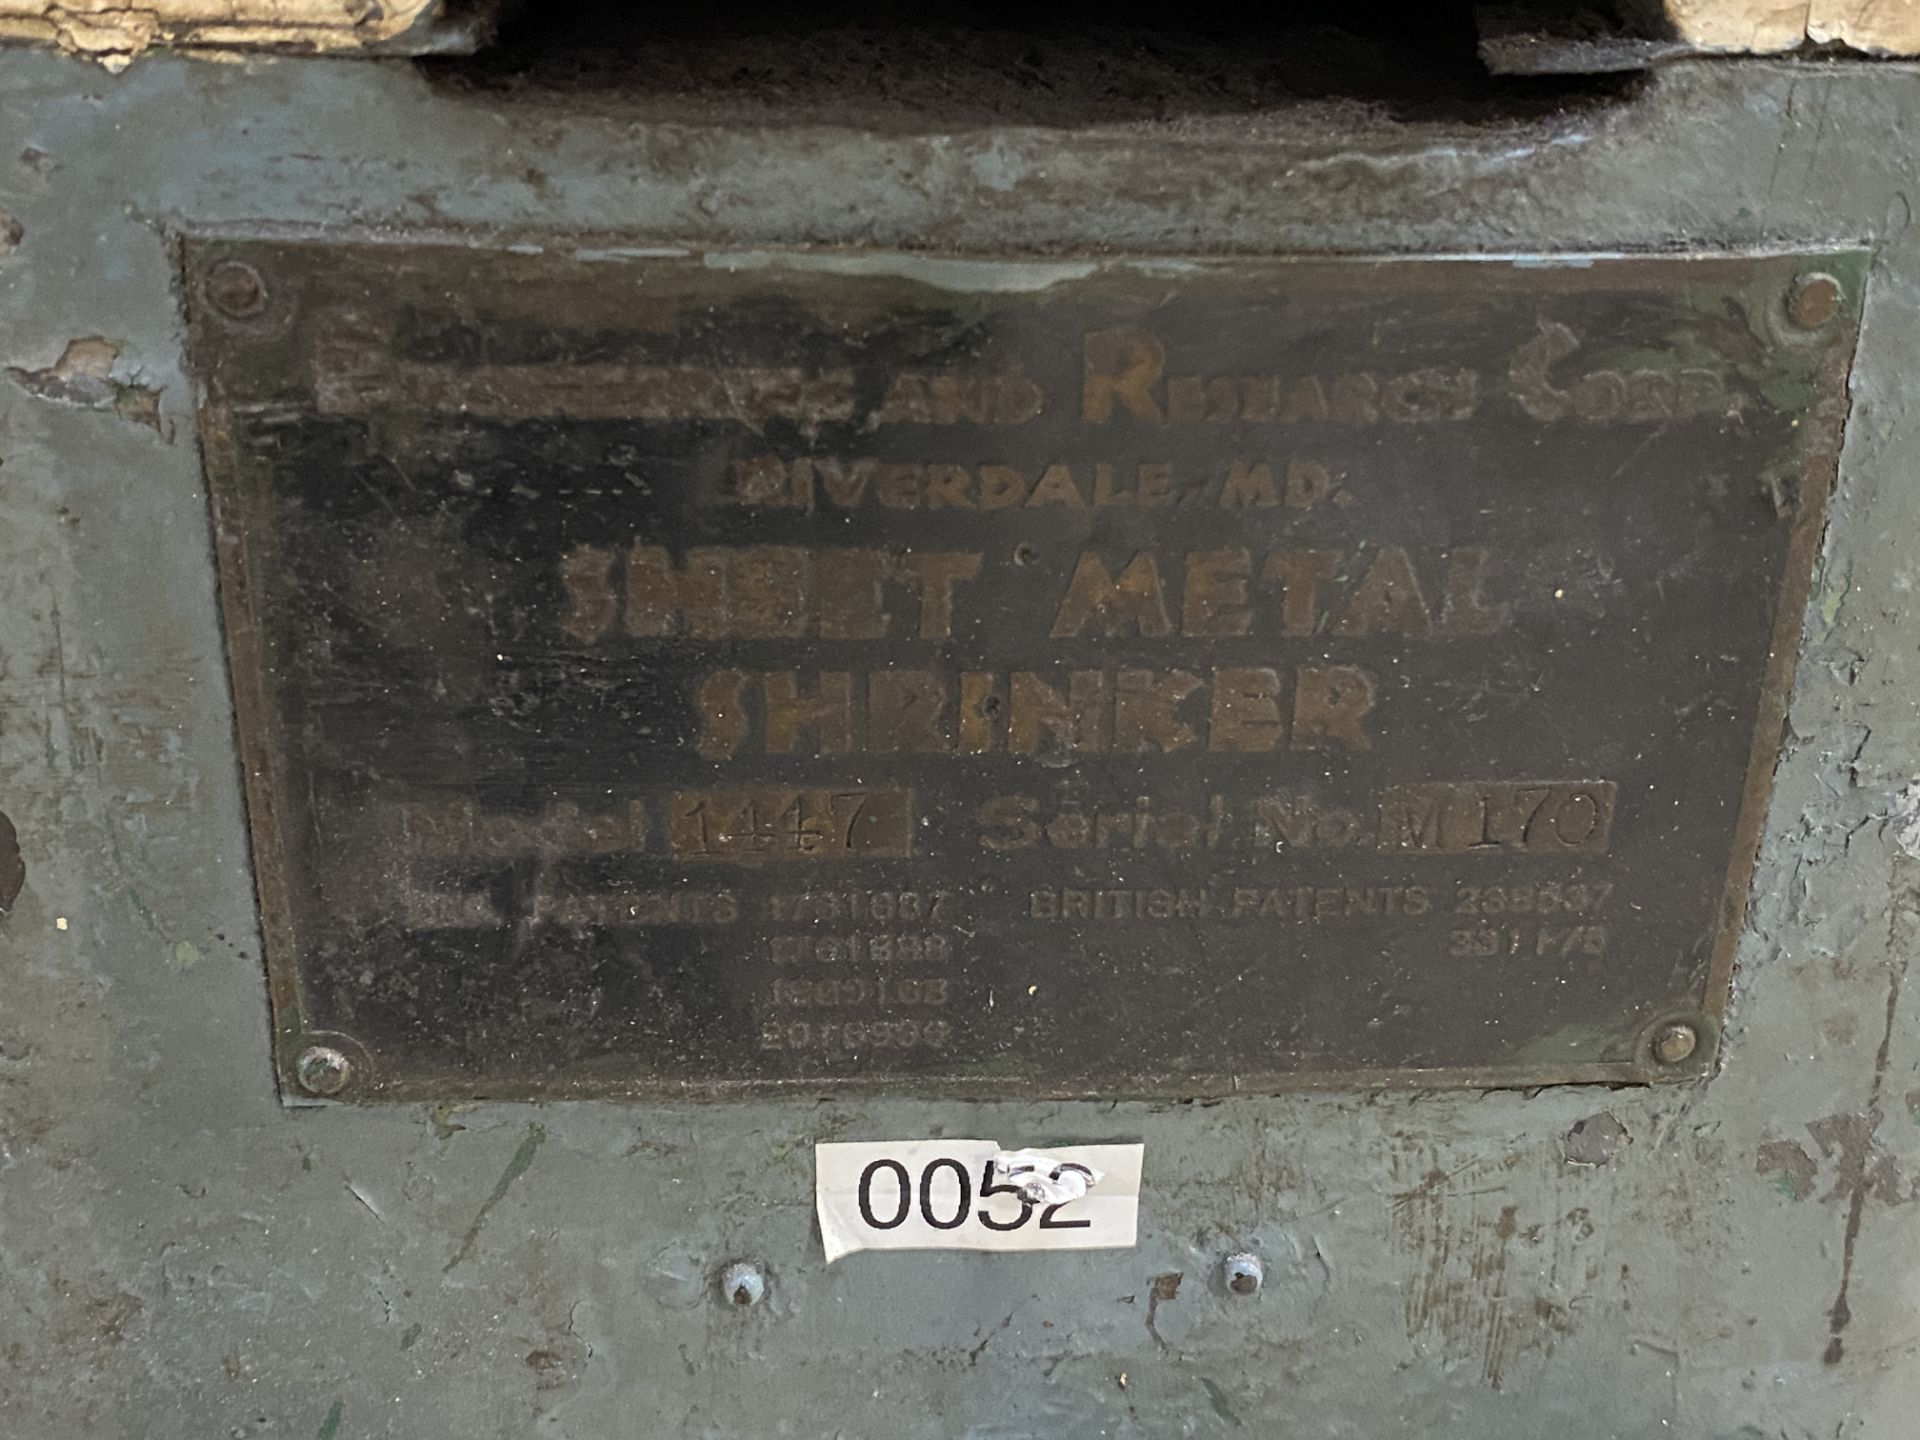 Erco 1447 Sheet Metal Shrinker, S/N M170 - Image 6 of 6